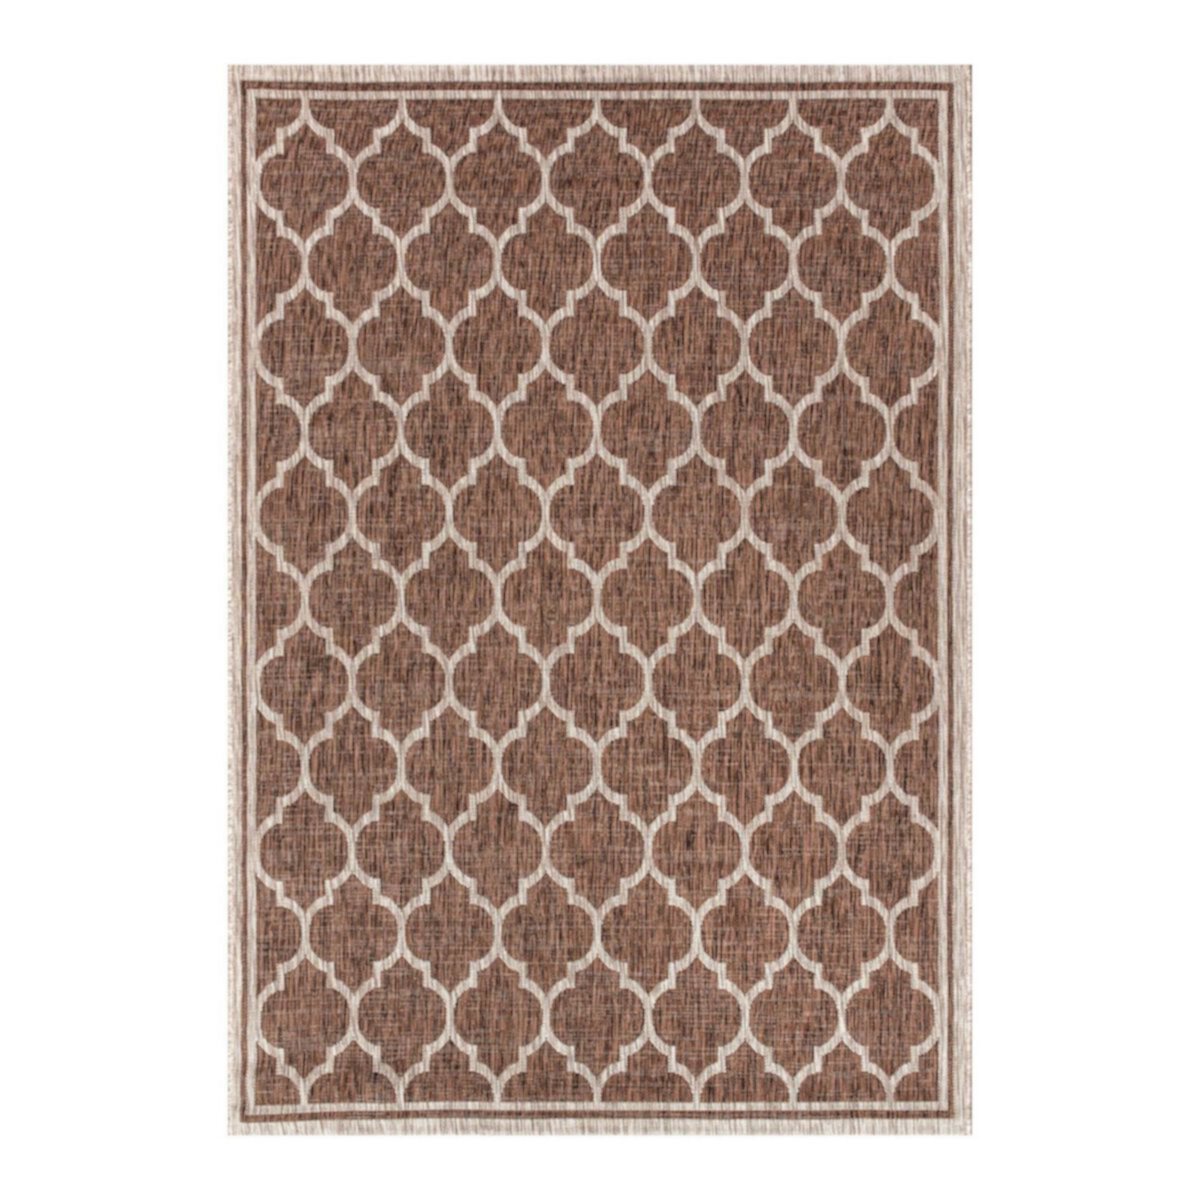 Марокканский решетчатый коврик Trebol с текстурированной тканью для внутреннего и наружного использования Jonathan Y Designs